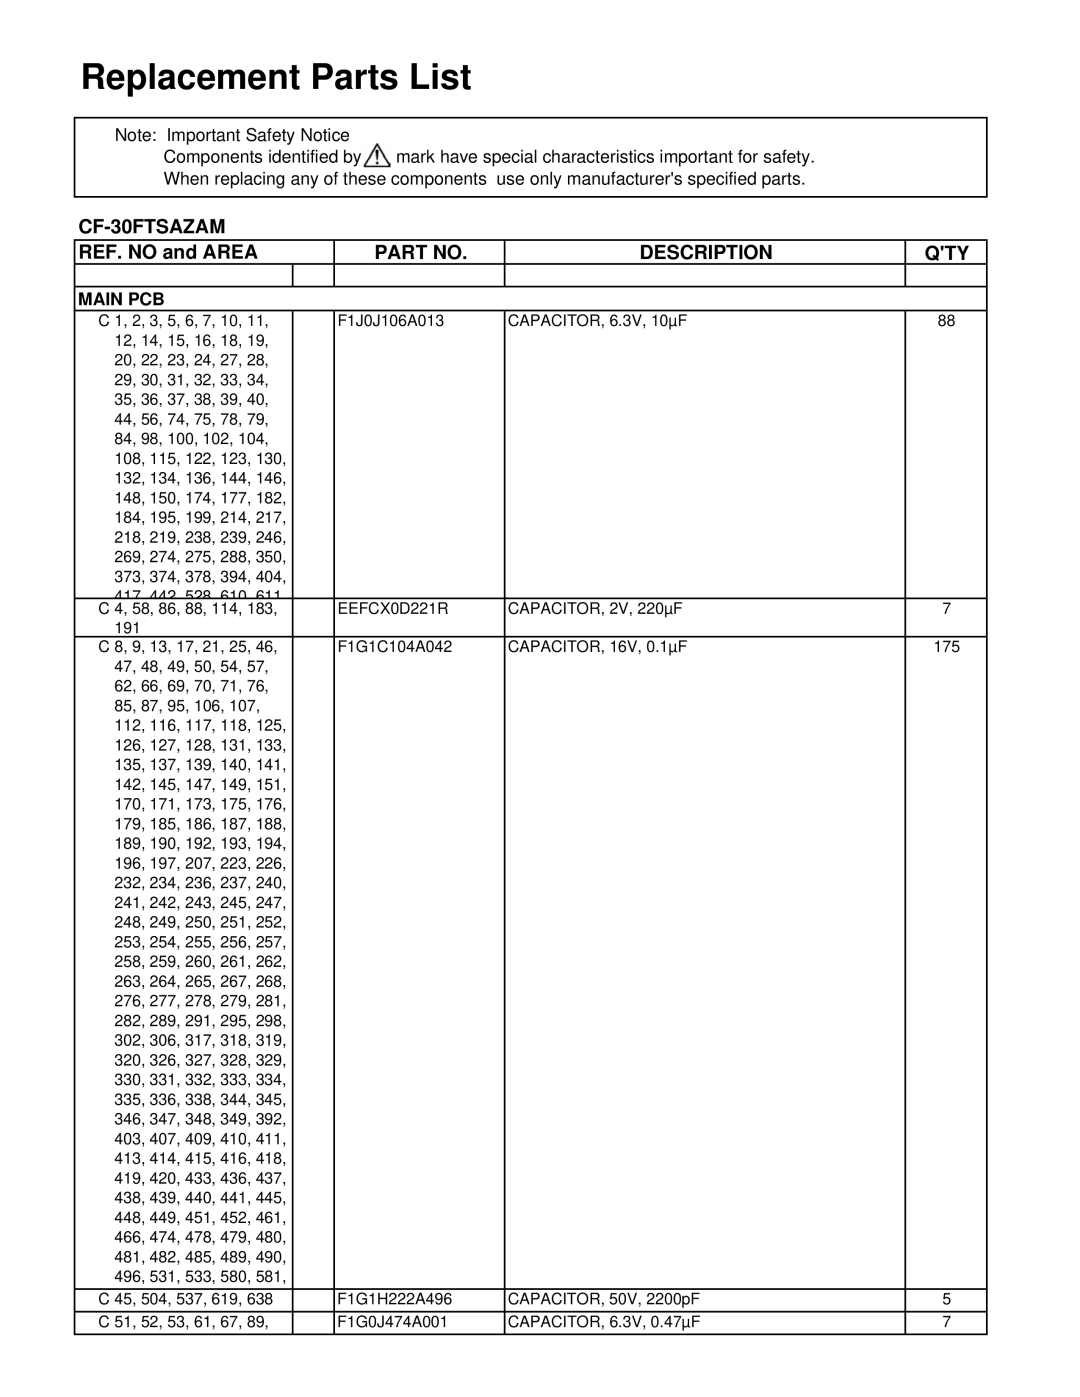 Philips CF-30FTSAZAM service manual Replacement Parts List, REF. NO and AREA, Part No, Description 